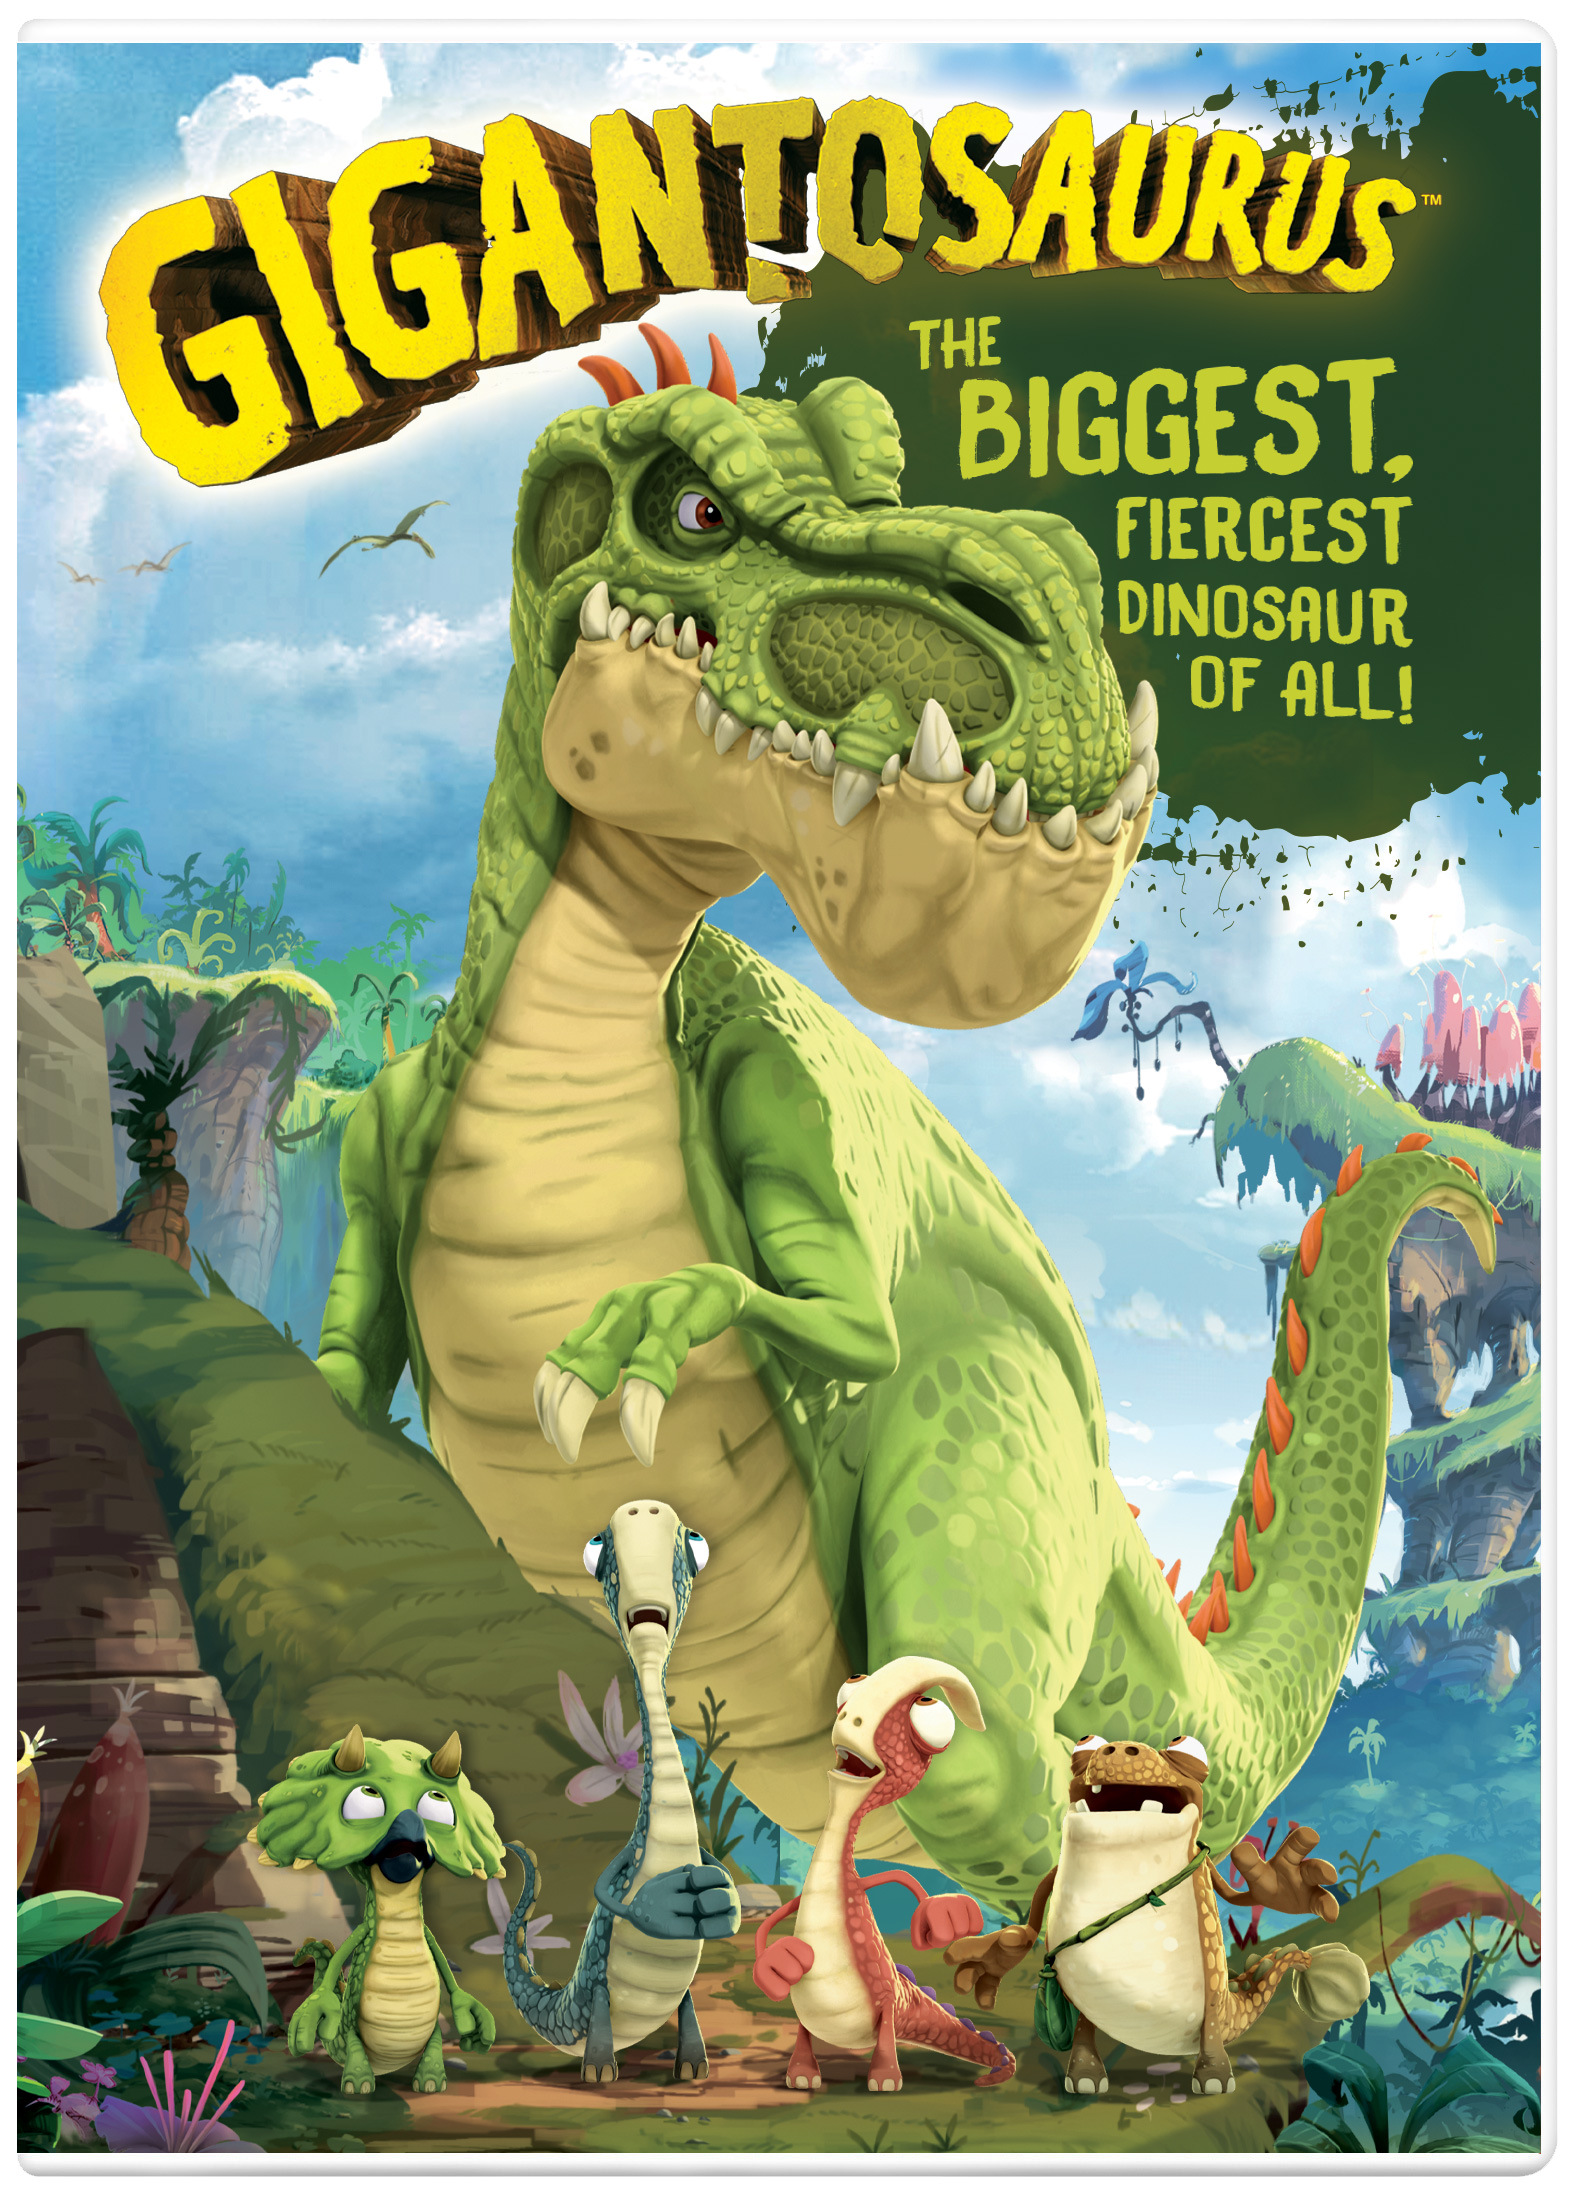 Gigantosaurus, The Biggest, Fiercest Dinosaur of All!